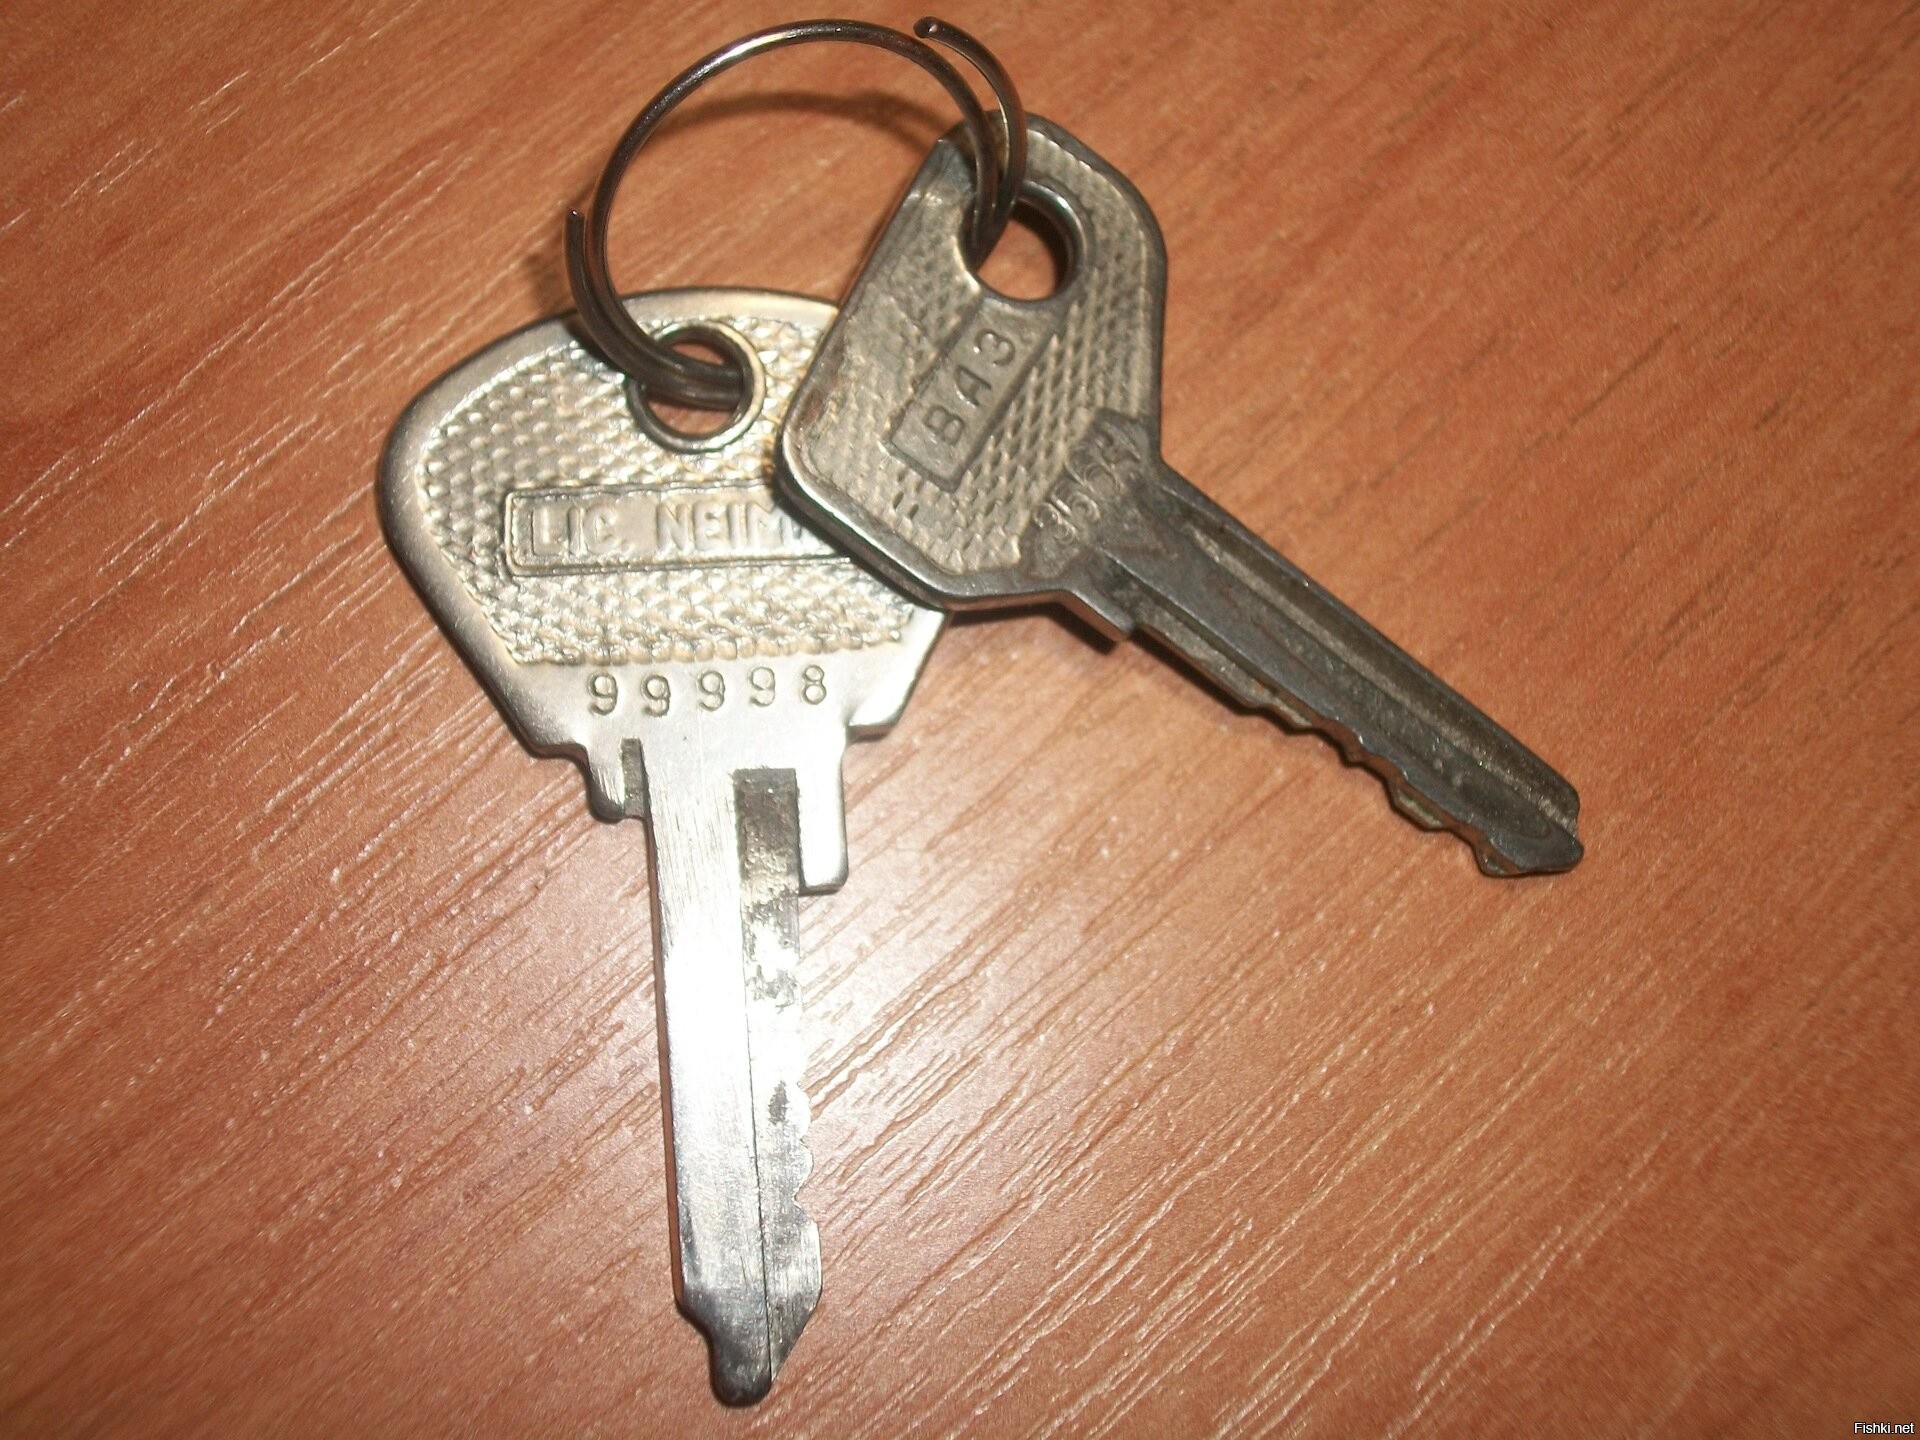 Первый ключ 2. Ключи ВАЗ 2101 оригинал. Ключи зажигания от ВАЗ 2101. Ключи от ВАЗ 2106 заводской. Ключ зажигания машины ВАЗ 2106.